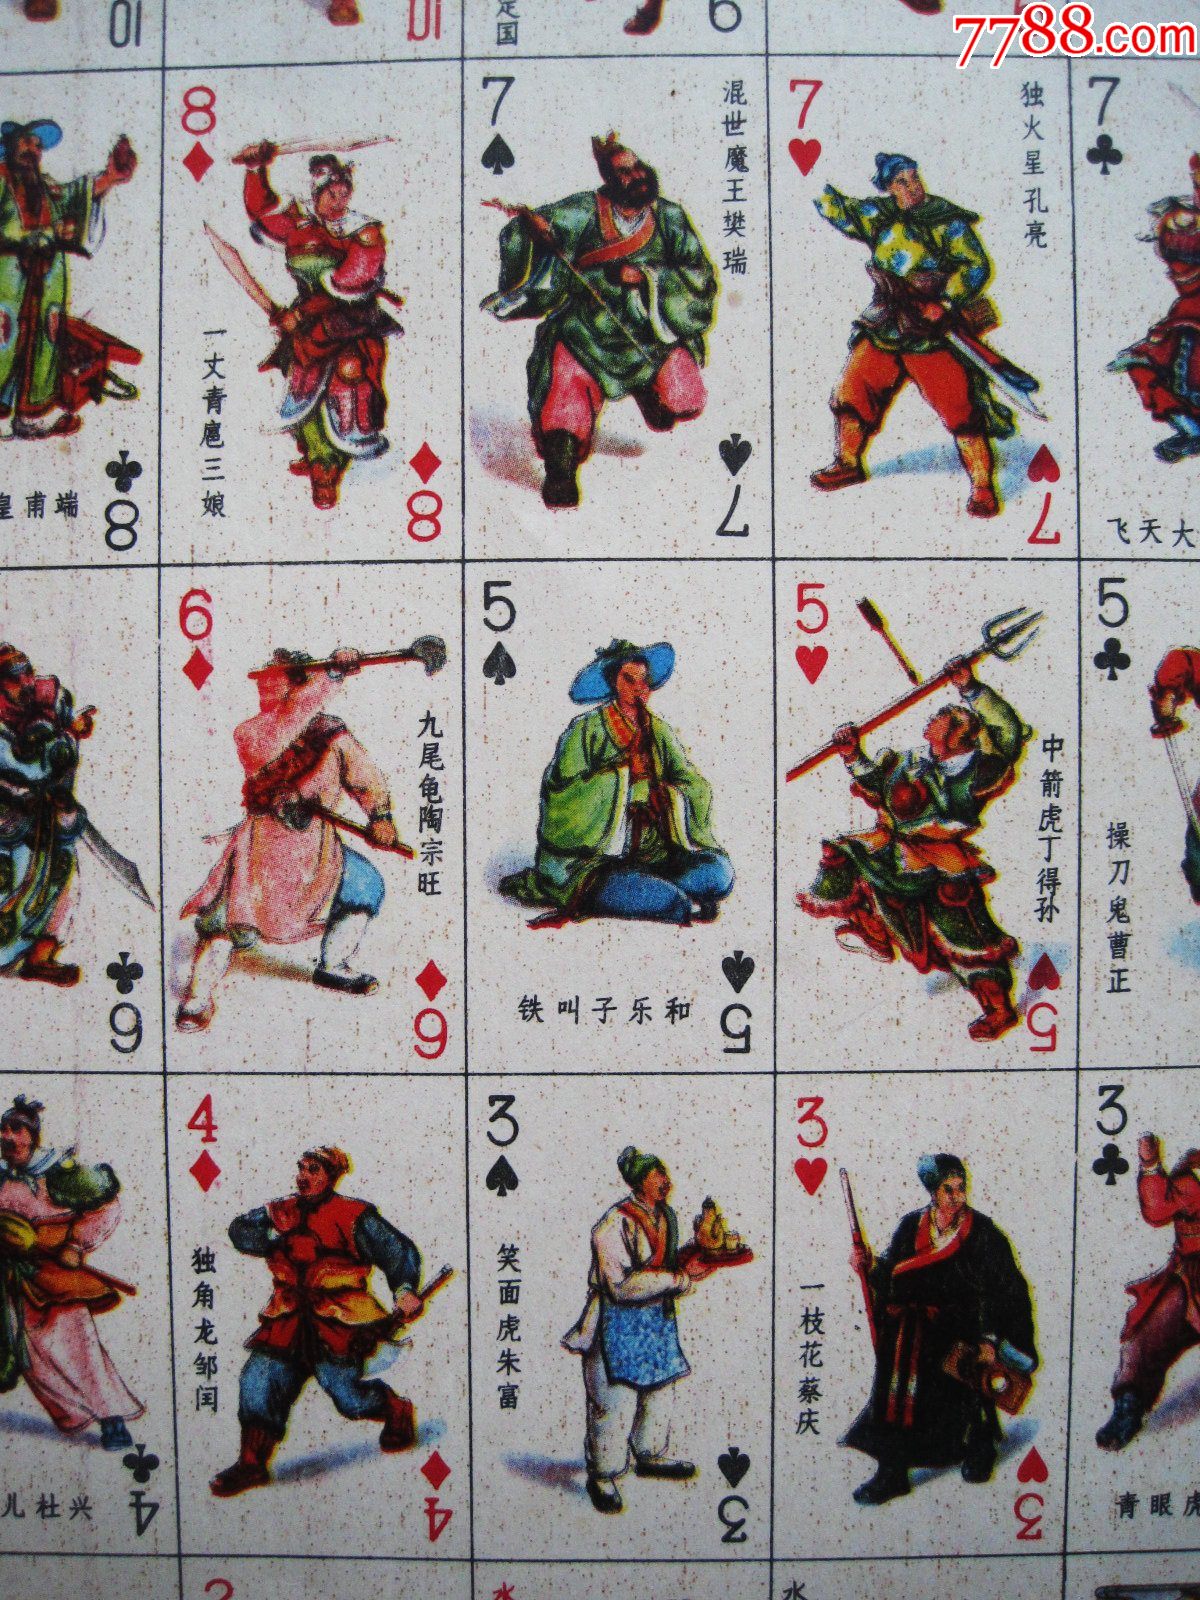 上海版水浒扑克图图片